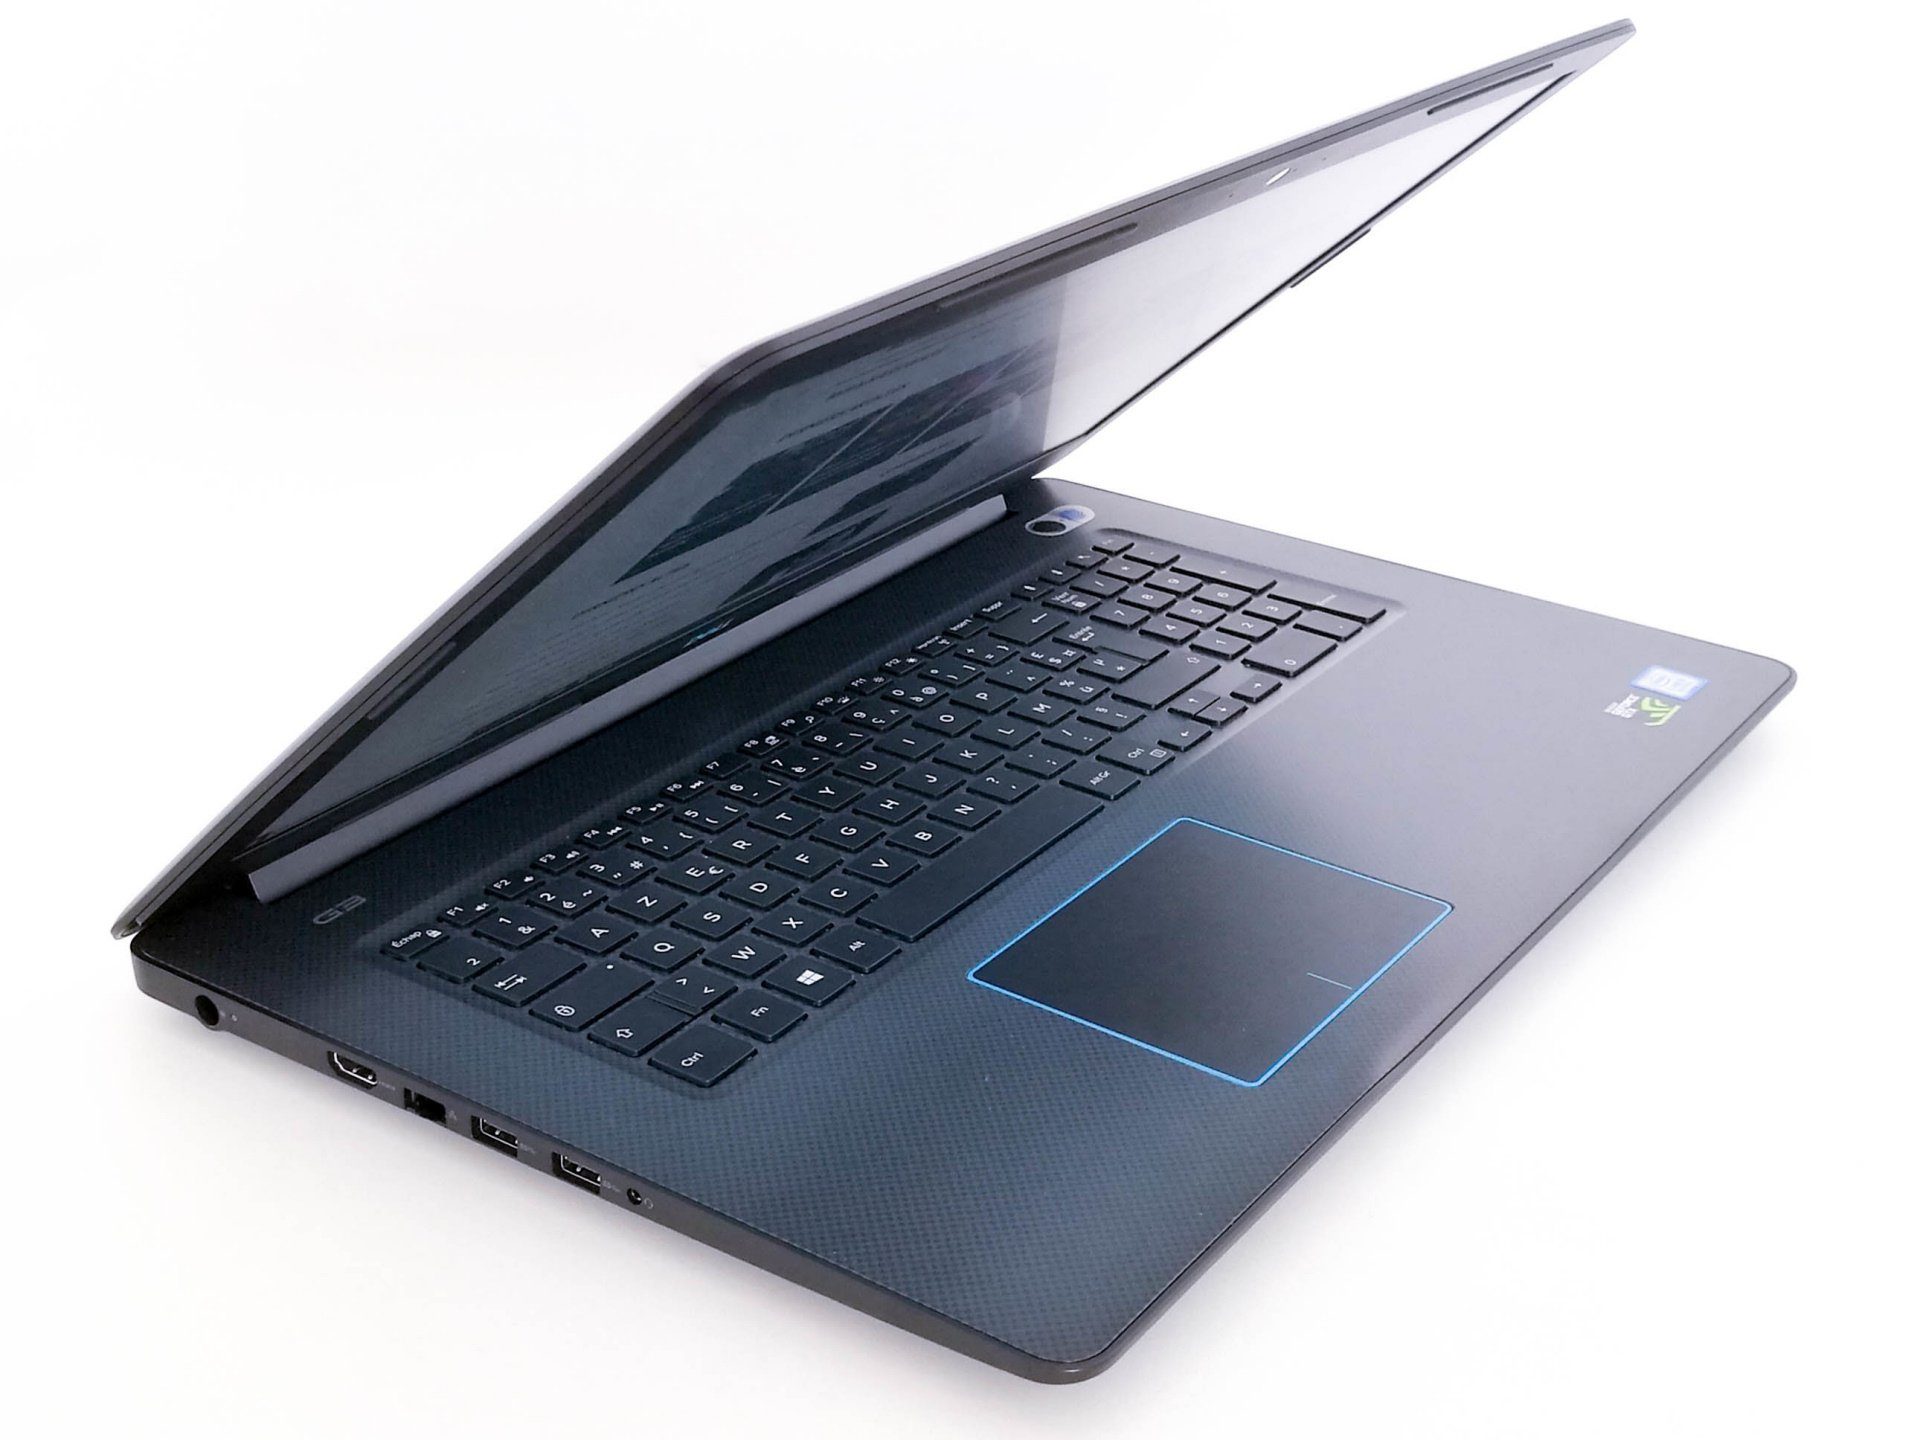 Image 2 : Test : Dell G3 17, un notebook gaming qui n'en a que le nom